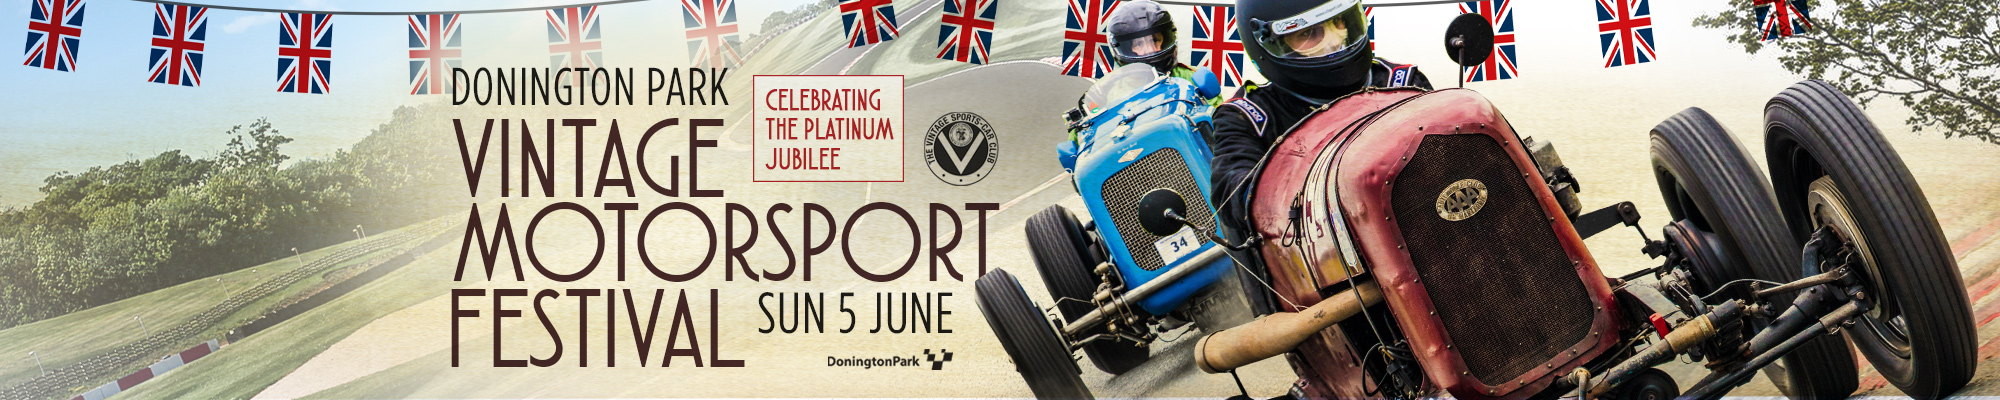 Vintage Motorsport Festival - Celebrating the Platinum Jubilee